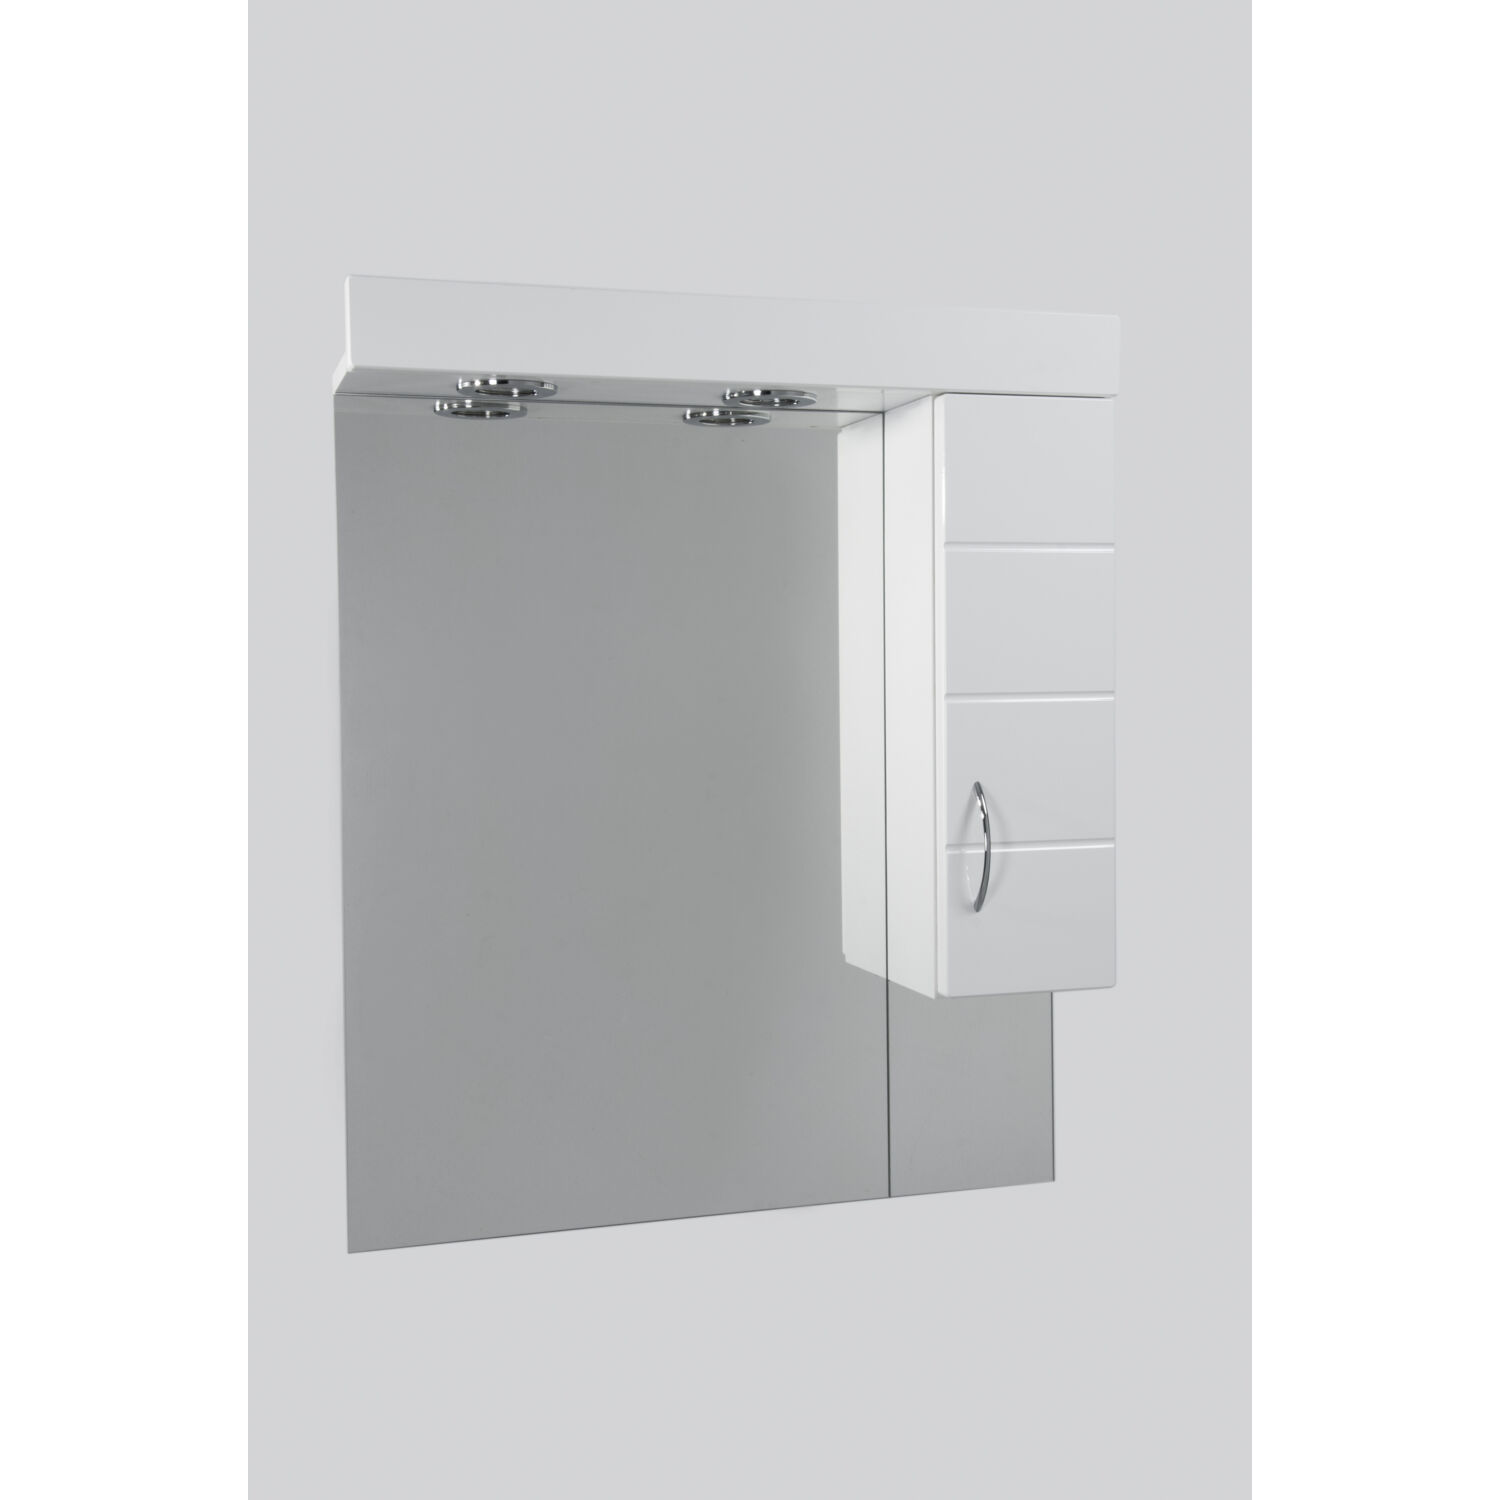 Standard 65SZ mart fürdőszobai tükör polcos kis szekrénnyel